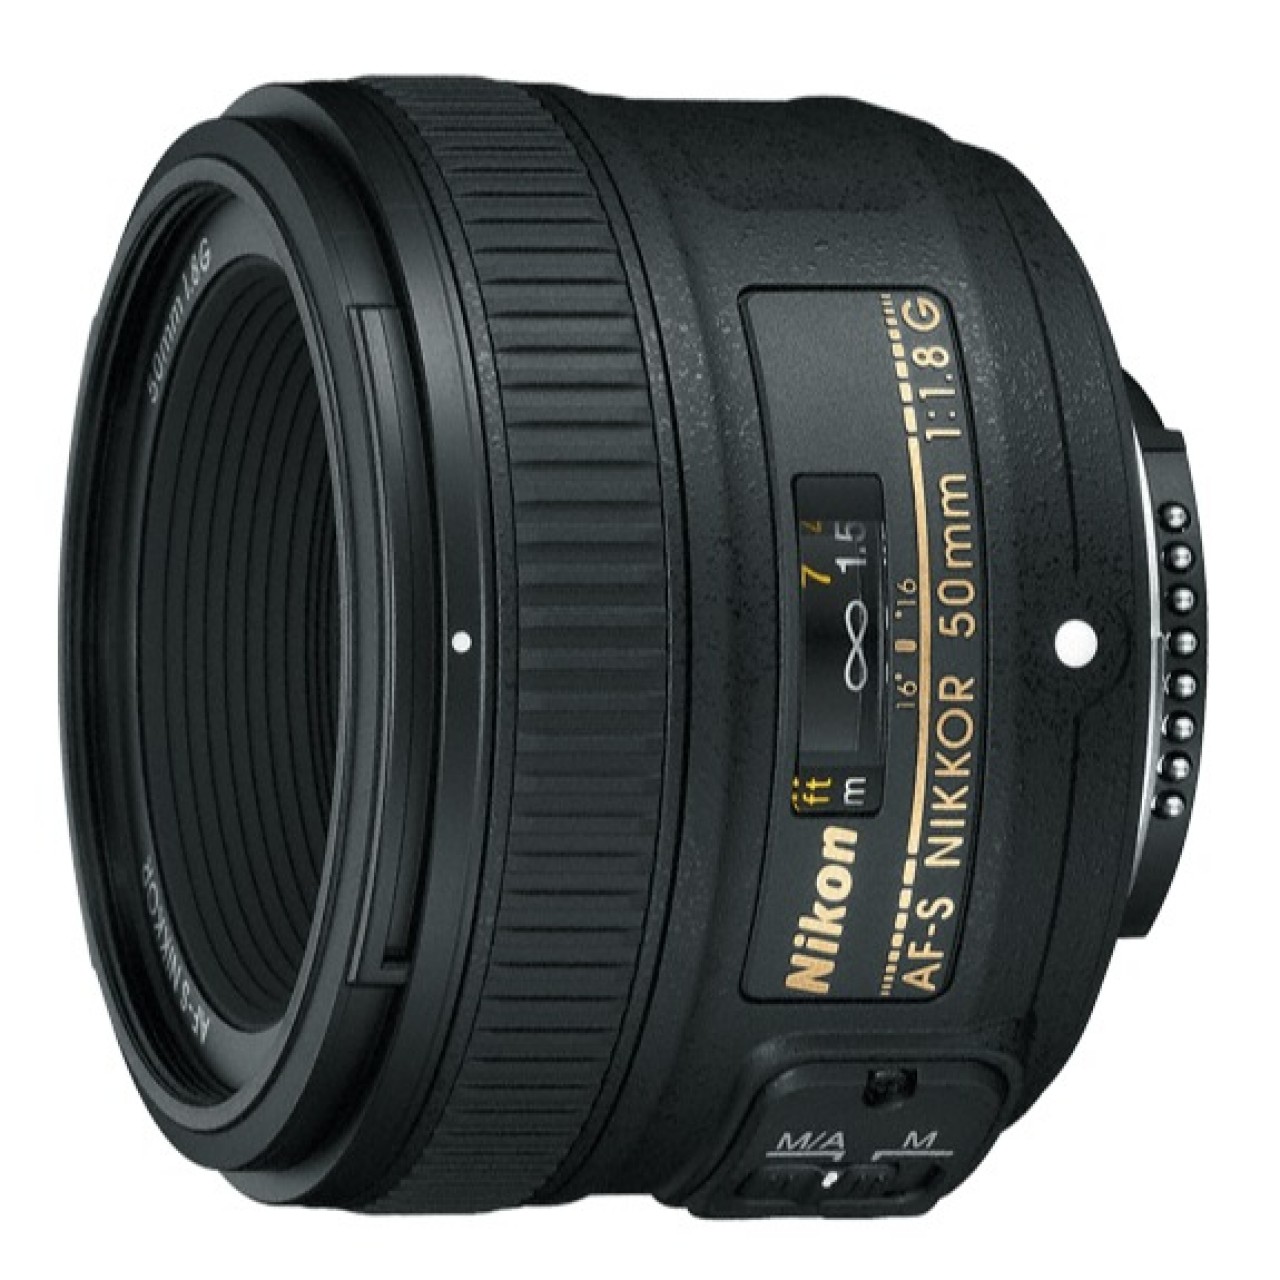 AF-S DX NIKKOR 50mm f/1.8G Lens For Nikon DSLR Camera